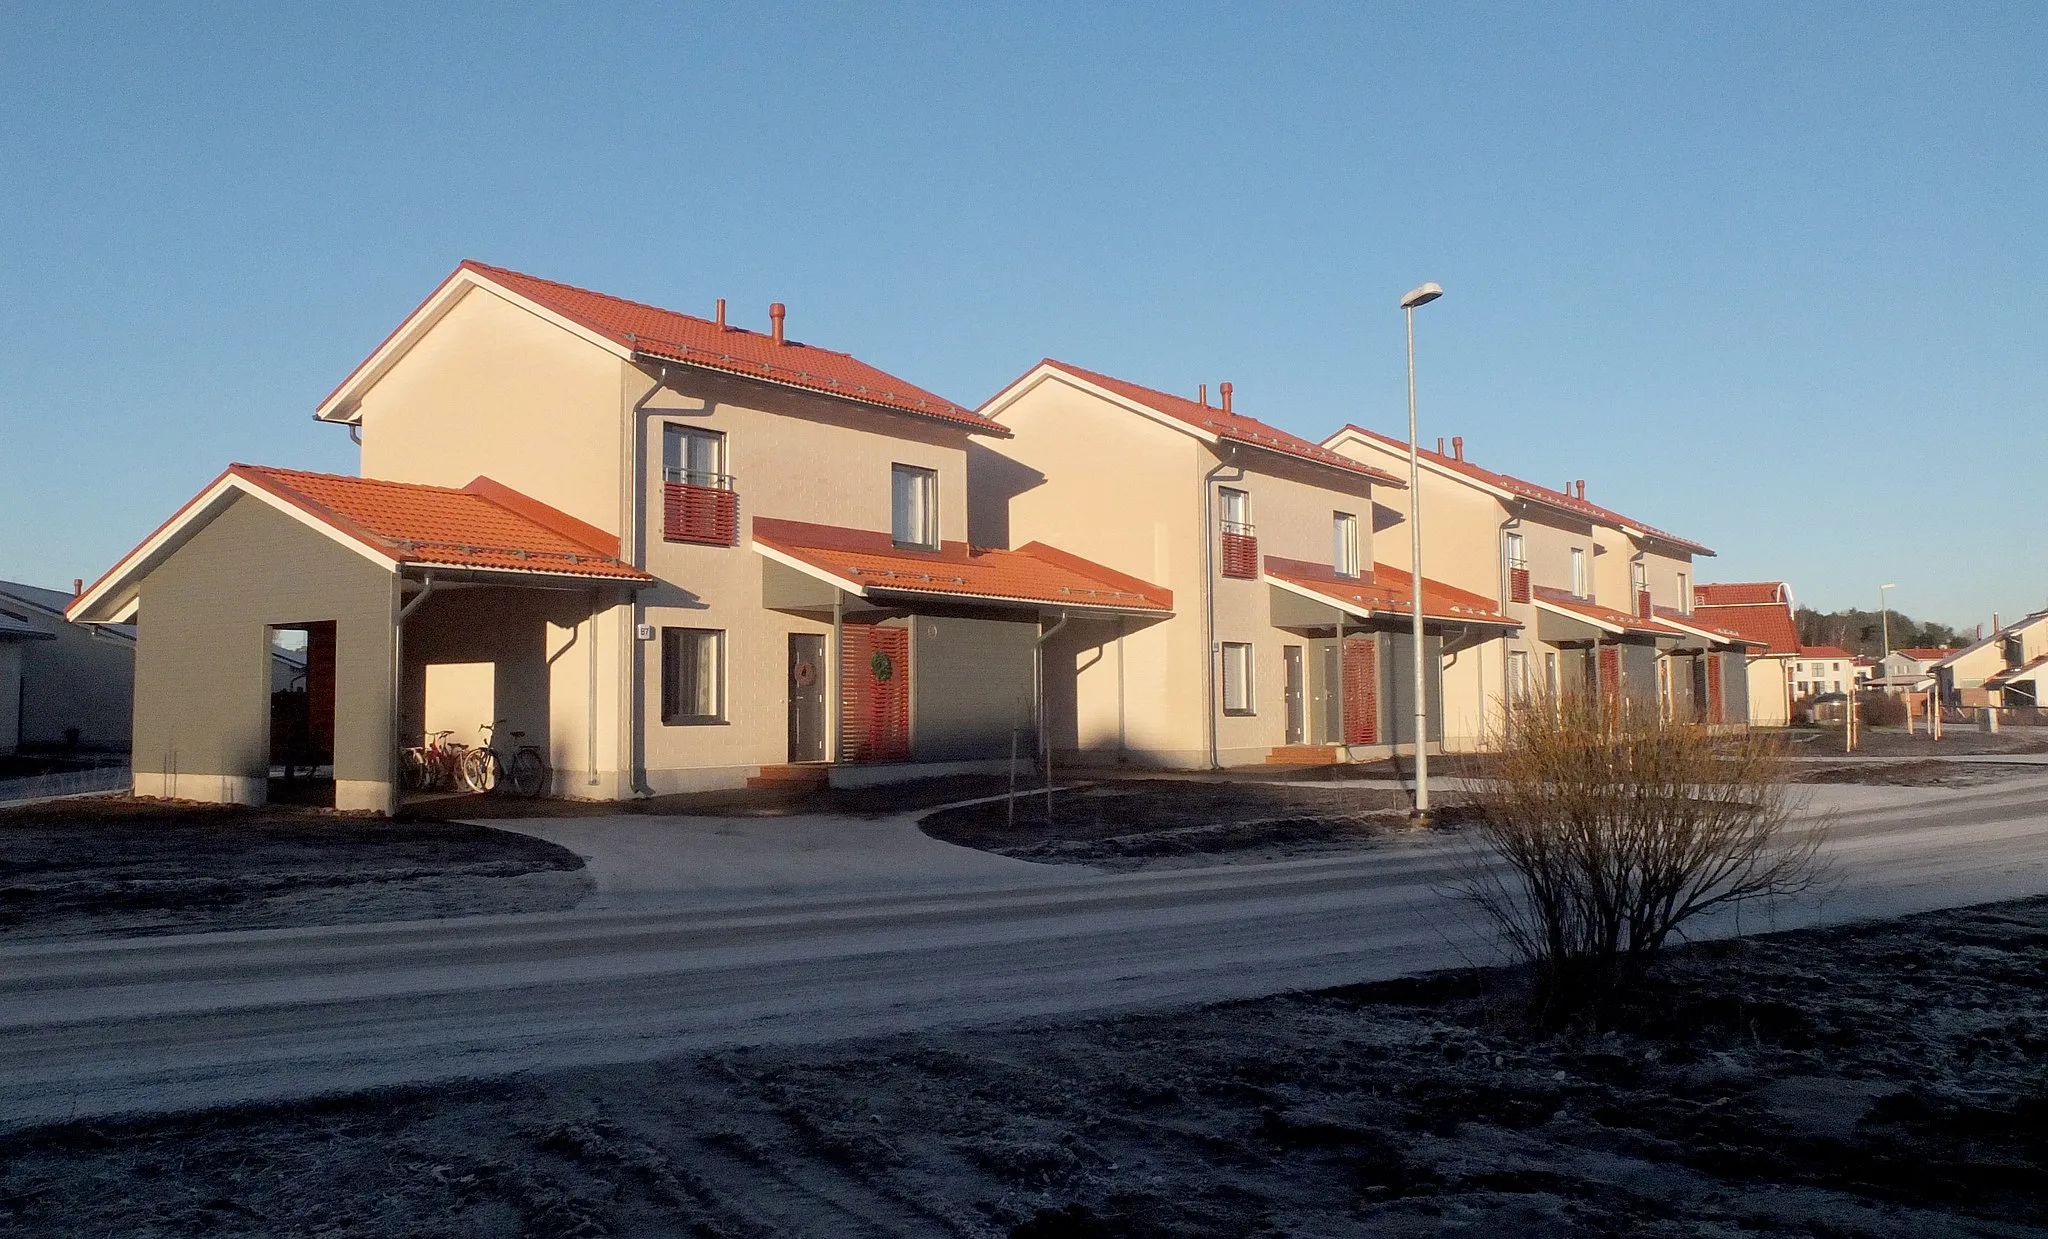 Photo showing: New semi-detached houses on Tähtimökatu / Stjärnblomsgatan street, Hannunniittu, Kurala, Turku, Finland, December 2013.